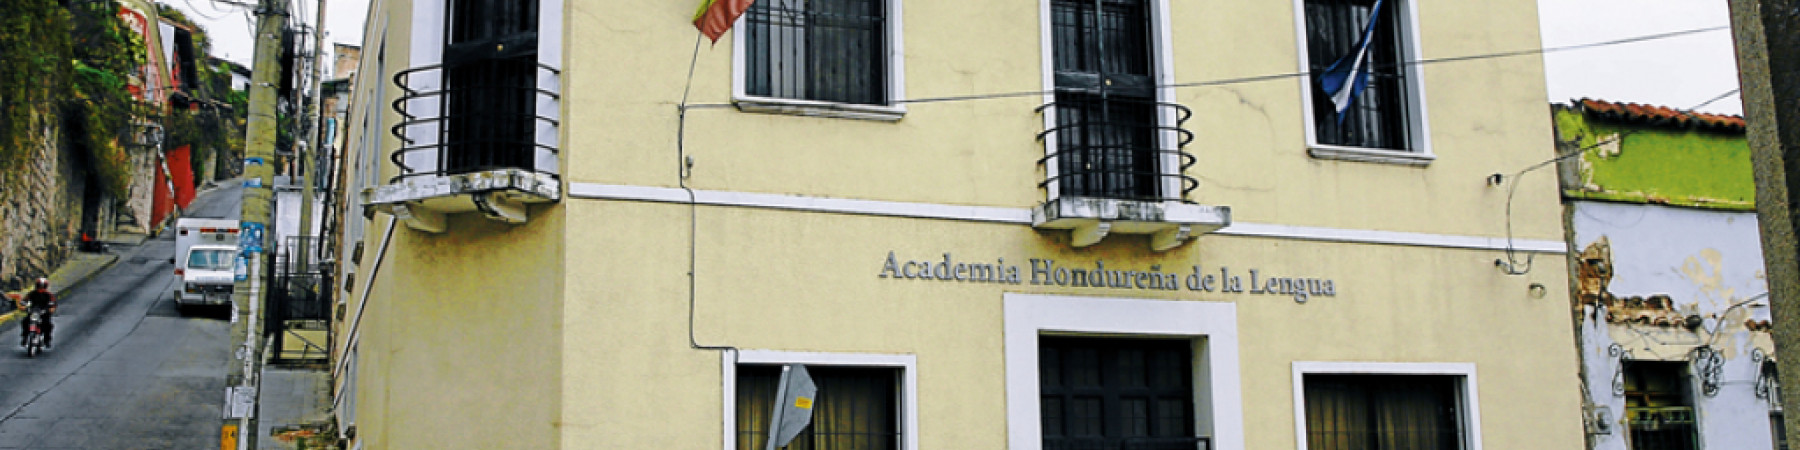 Sede de la Academia Hondureña de la Lengua